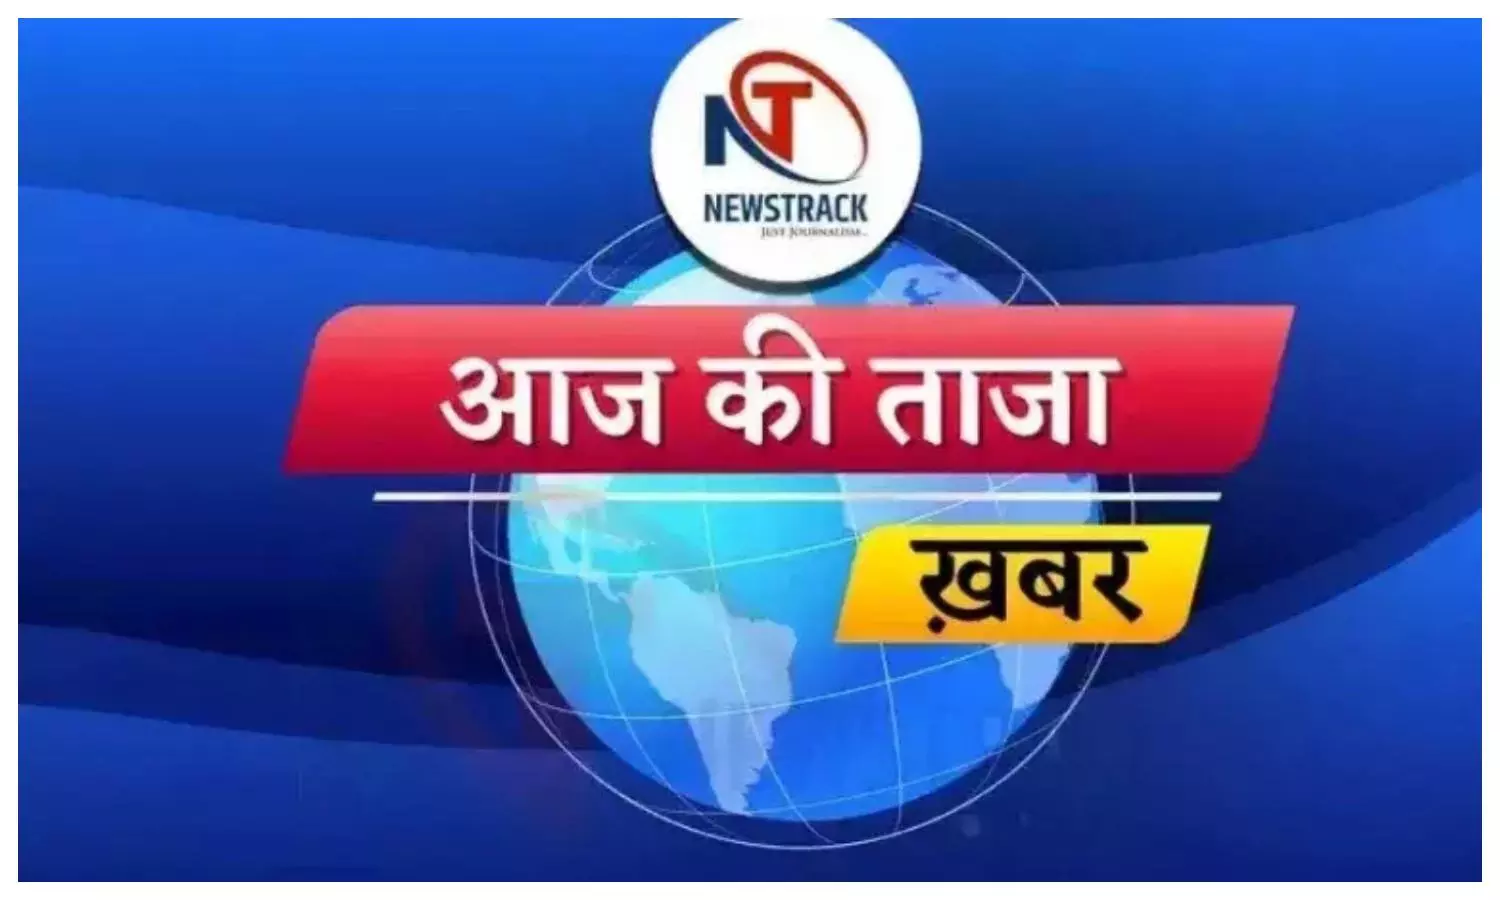 aaj ki taza khabar, up latest news in hindi, desh duniya ki khabar